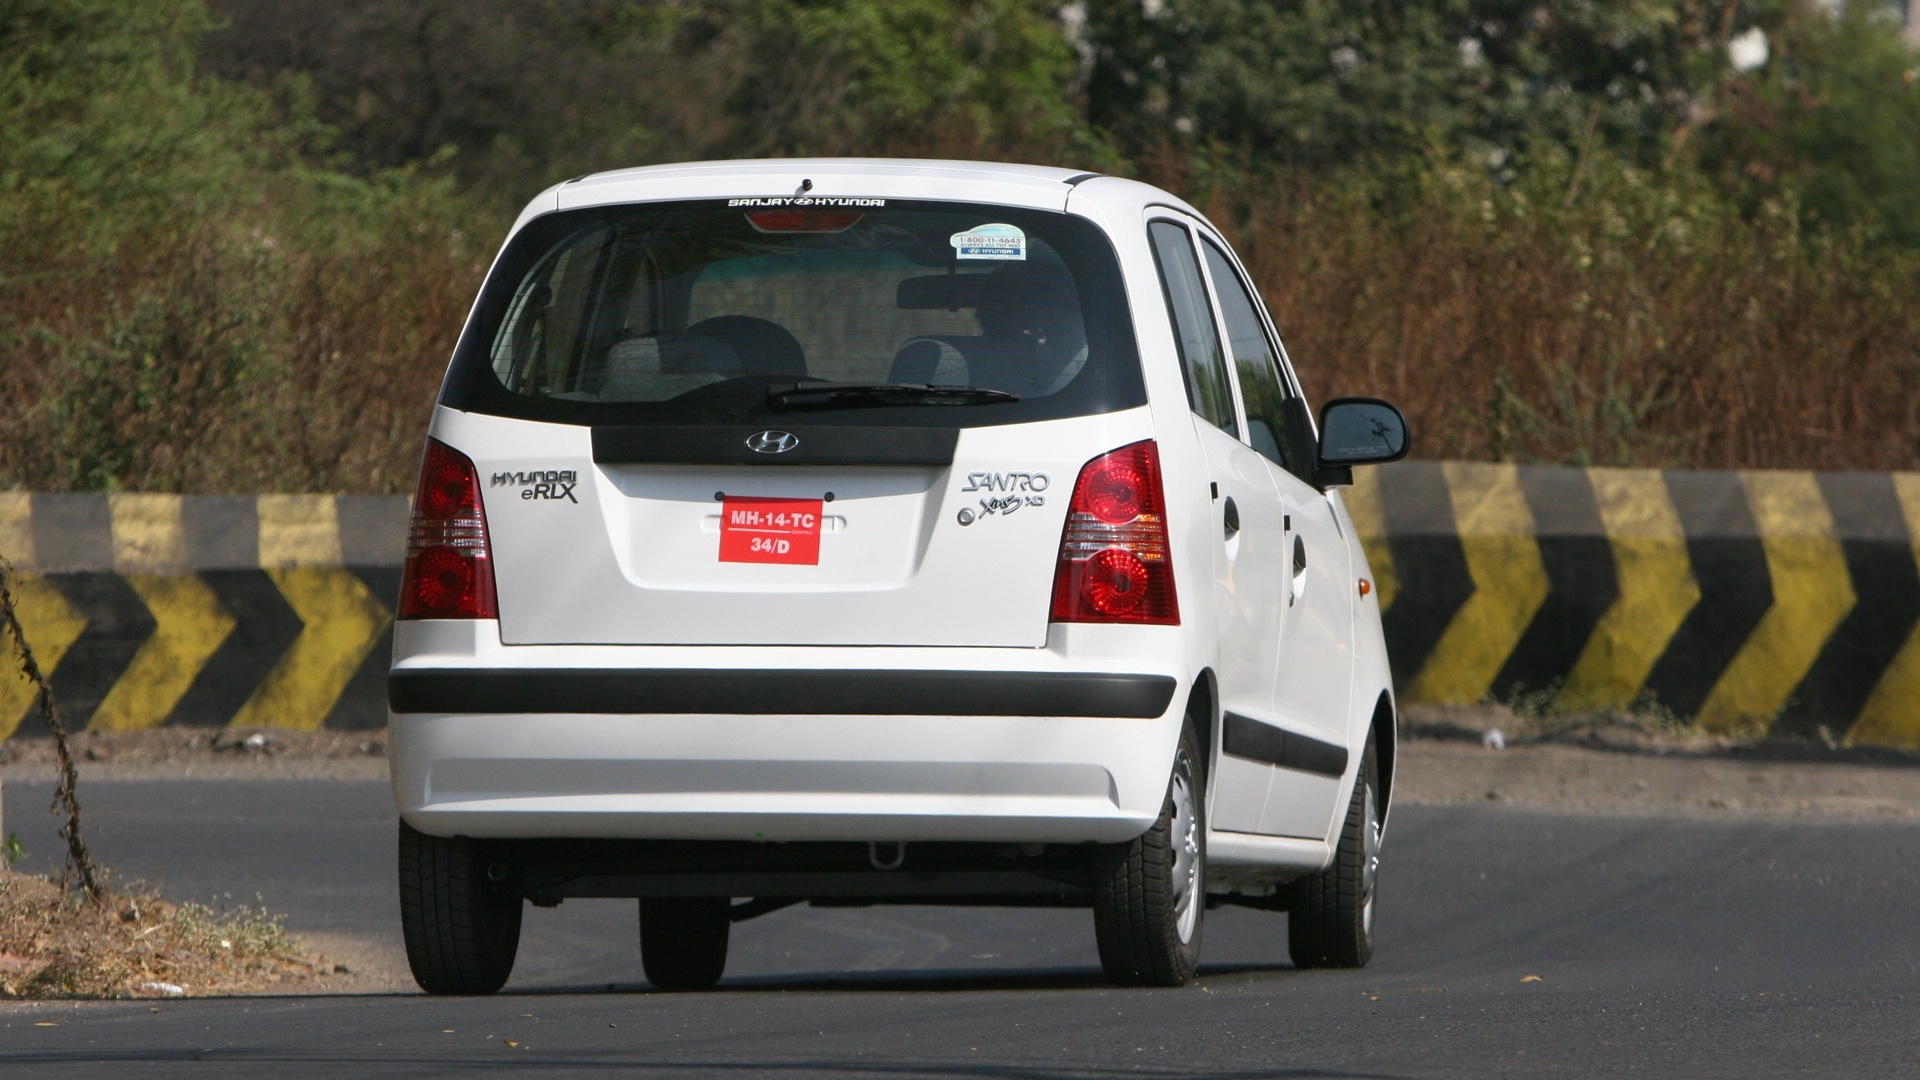 Hyundai-Santro-2012-Non-A/c-Exterior